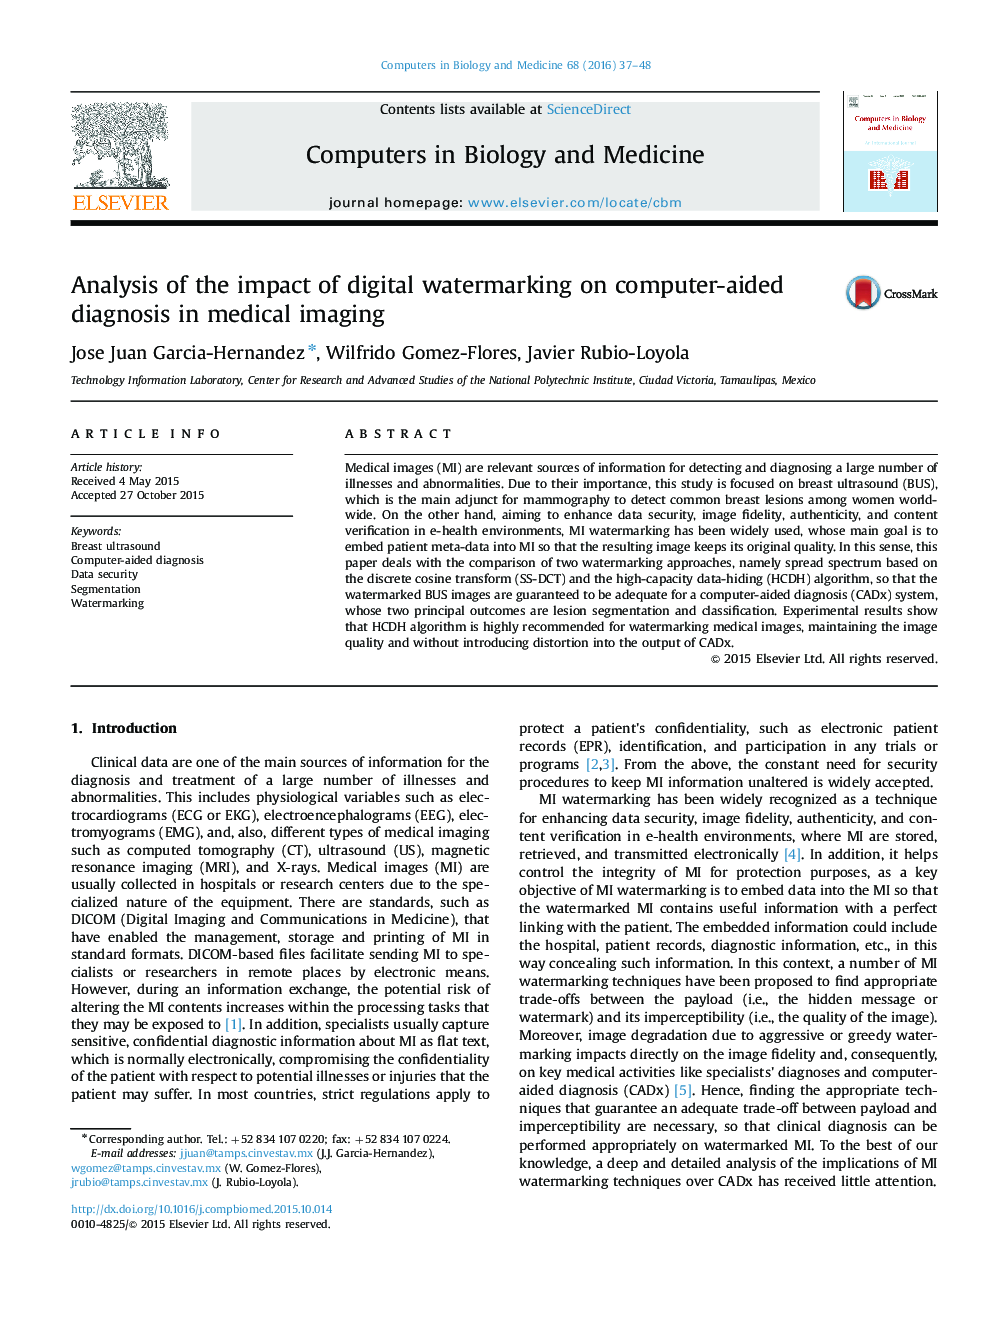 تجزیه و تحلیل اثر نهان نگاری دیجیتالی بر روی تشخیص به کمک کامپیوتر در تصویربرداری پزشکی